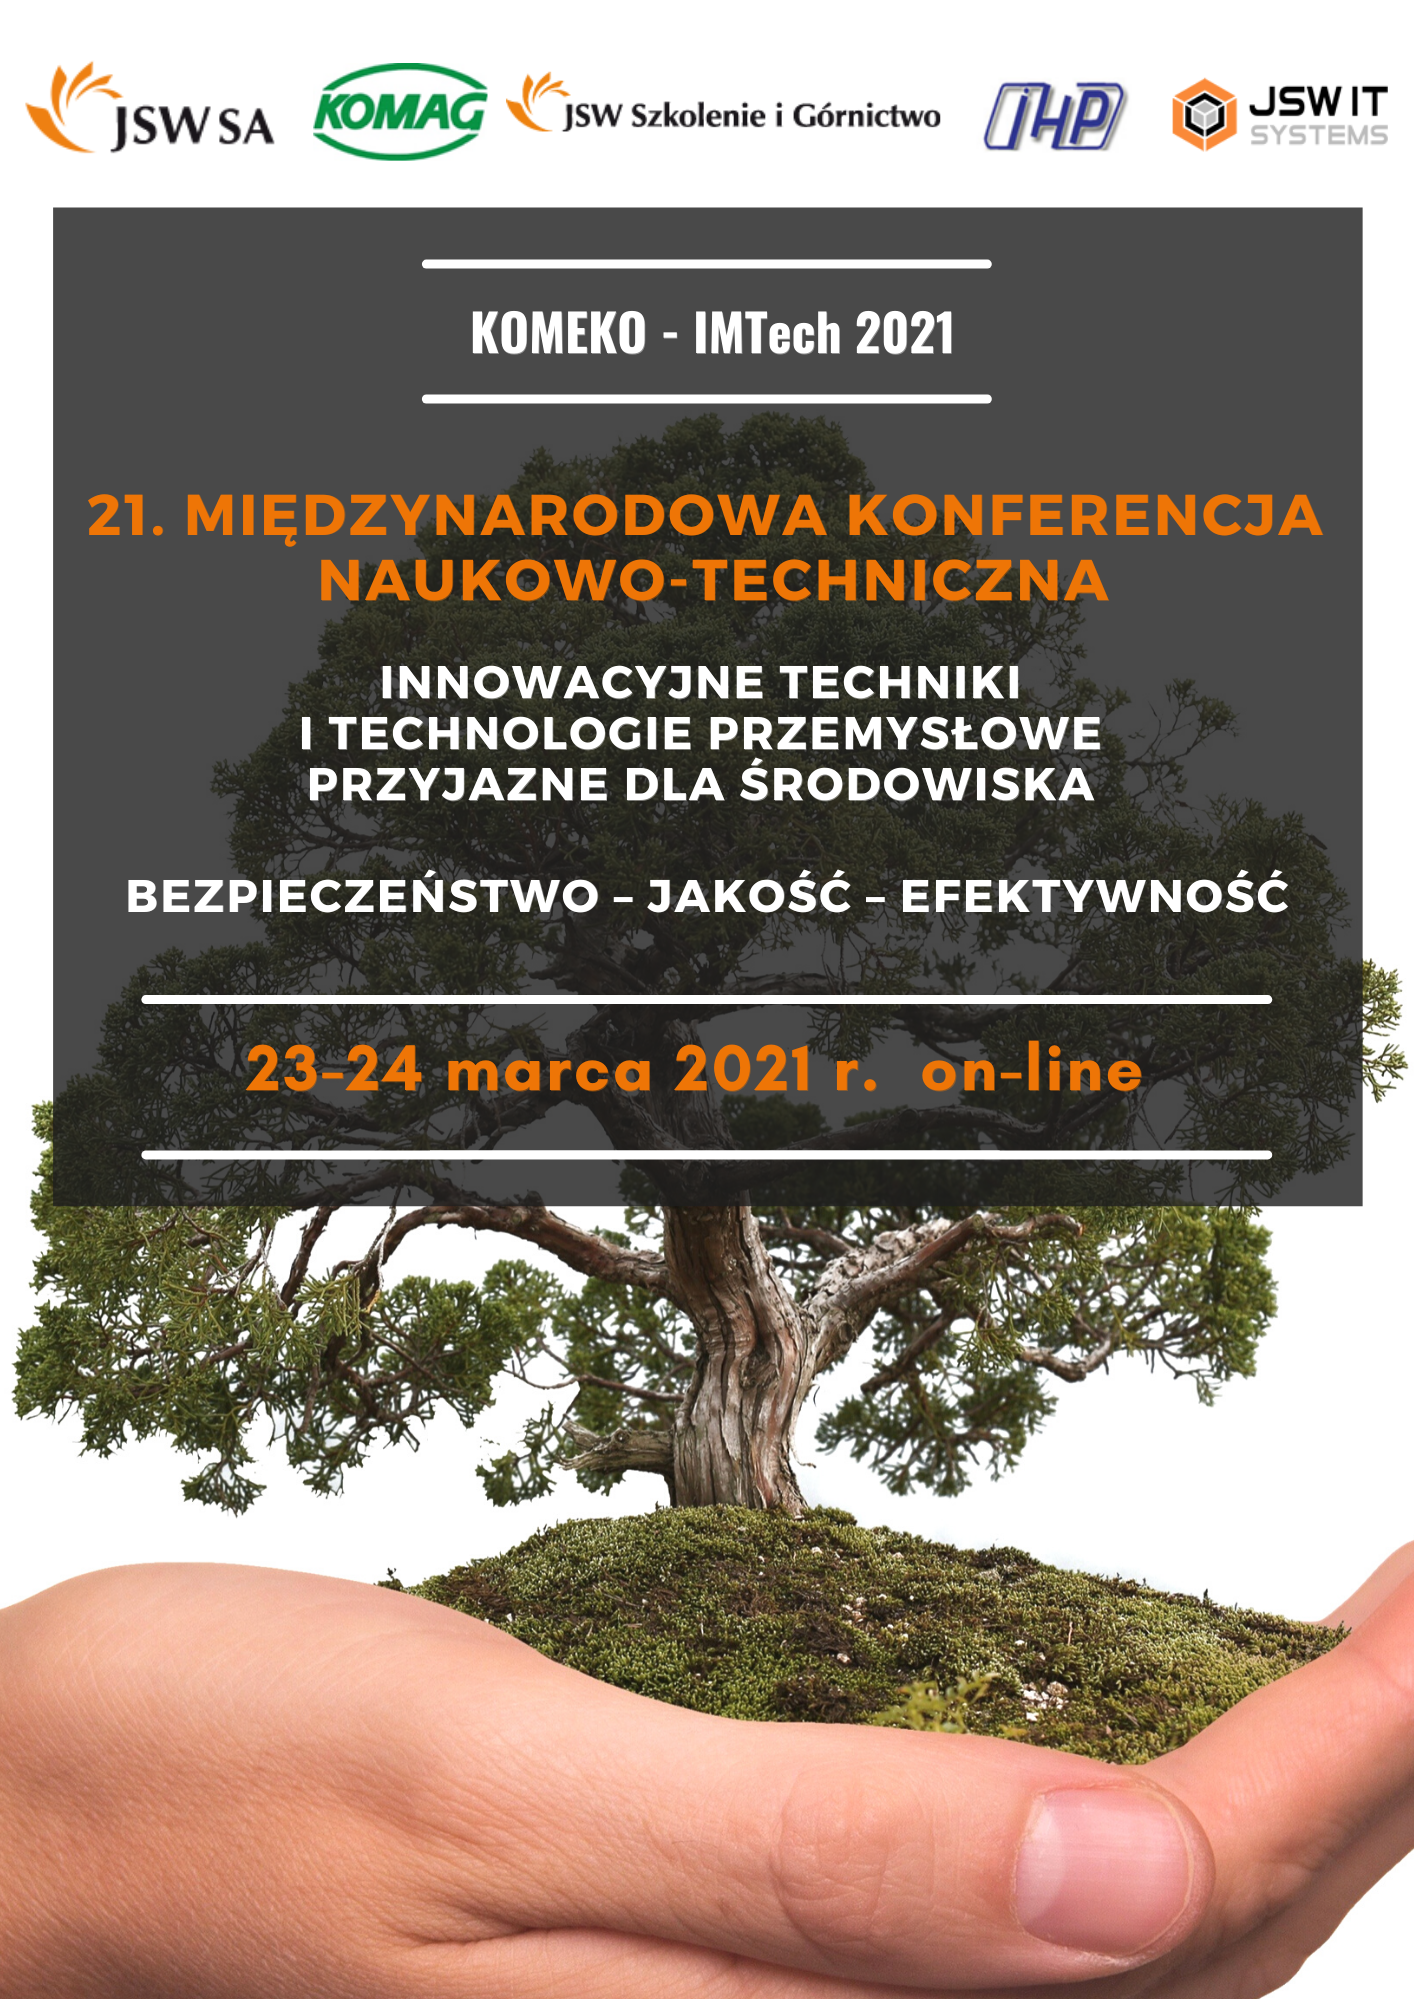 Baner zaprasza do udziału w 21. Międzynarodowej Konferencji Naukowo-Technicznej z cyklu KOMEKO-IMTech, która odbędzie się w dniach 23 i 24 marca br. w formule online.